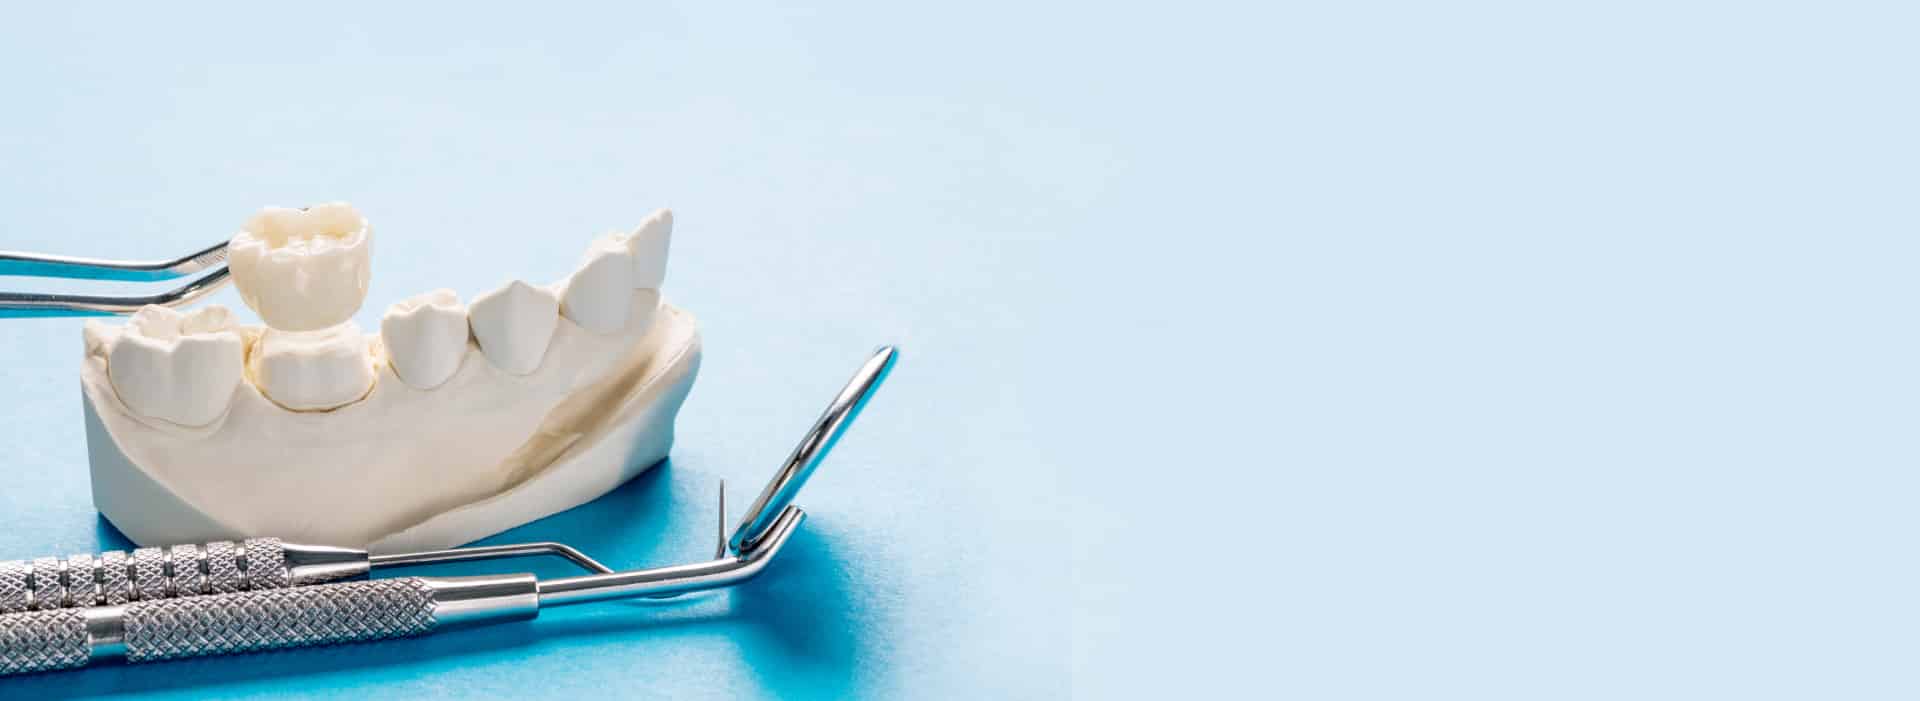 Zahnersatz Prothetik - Zahnkrone auf Zahnmodell